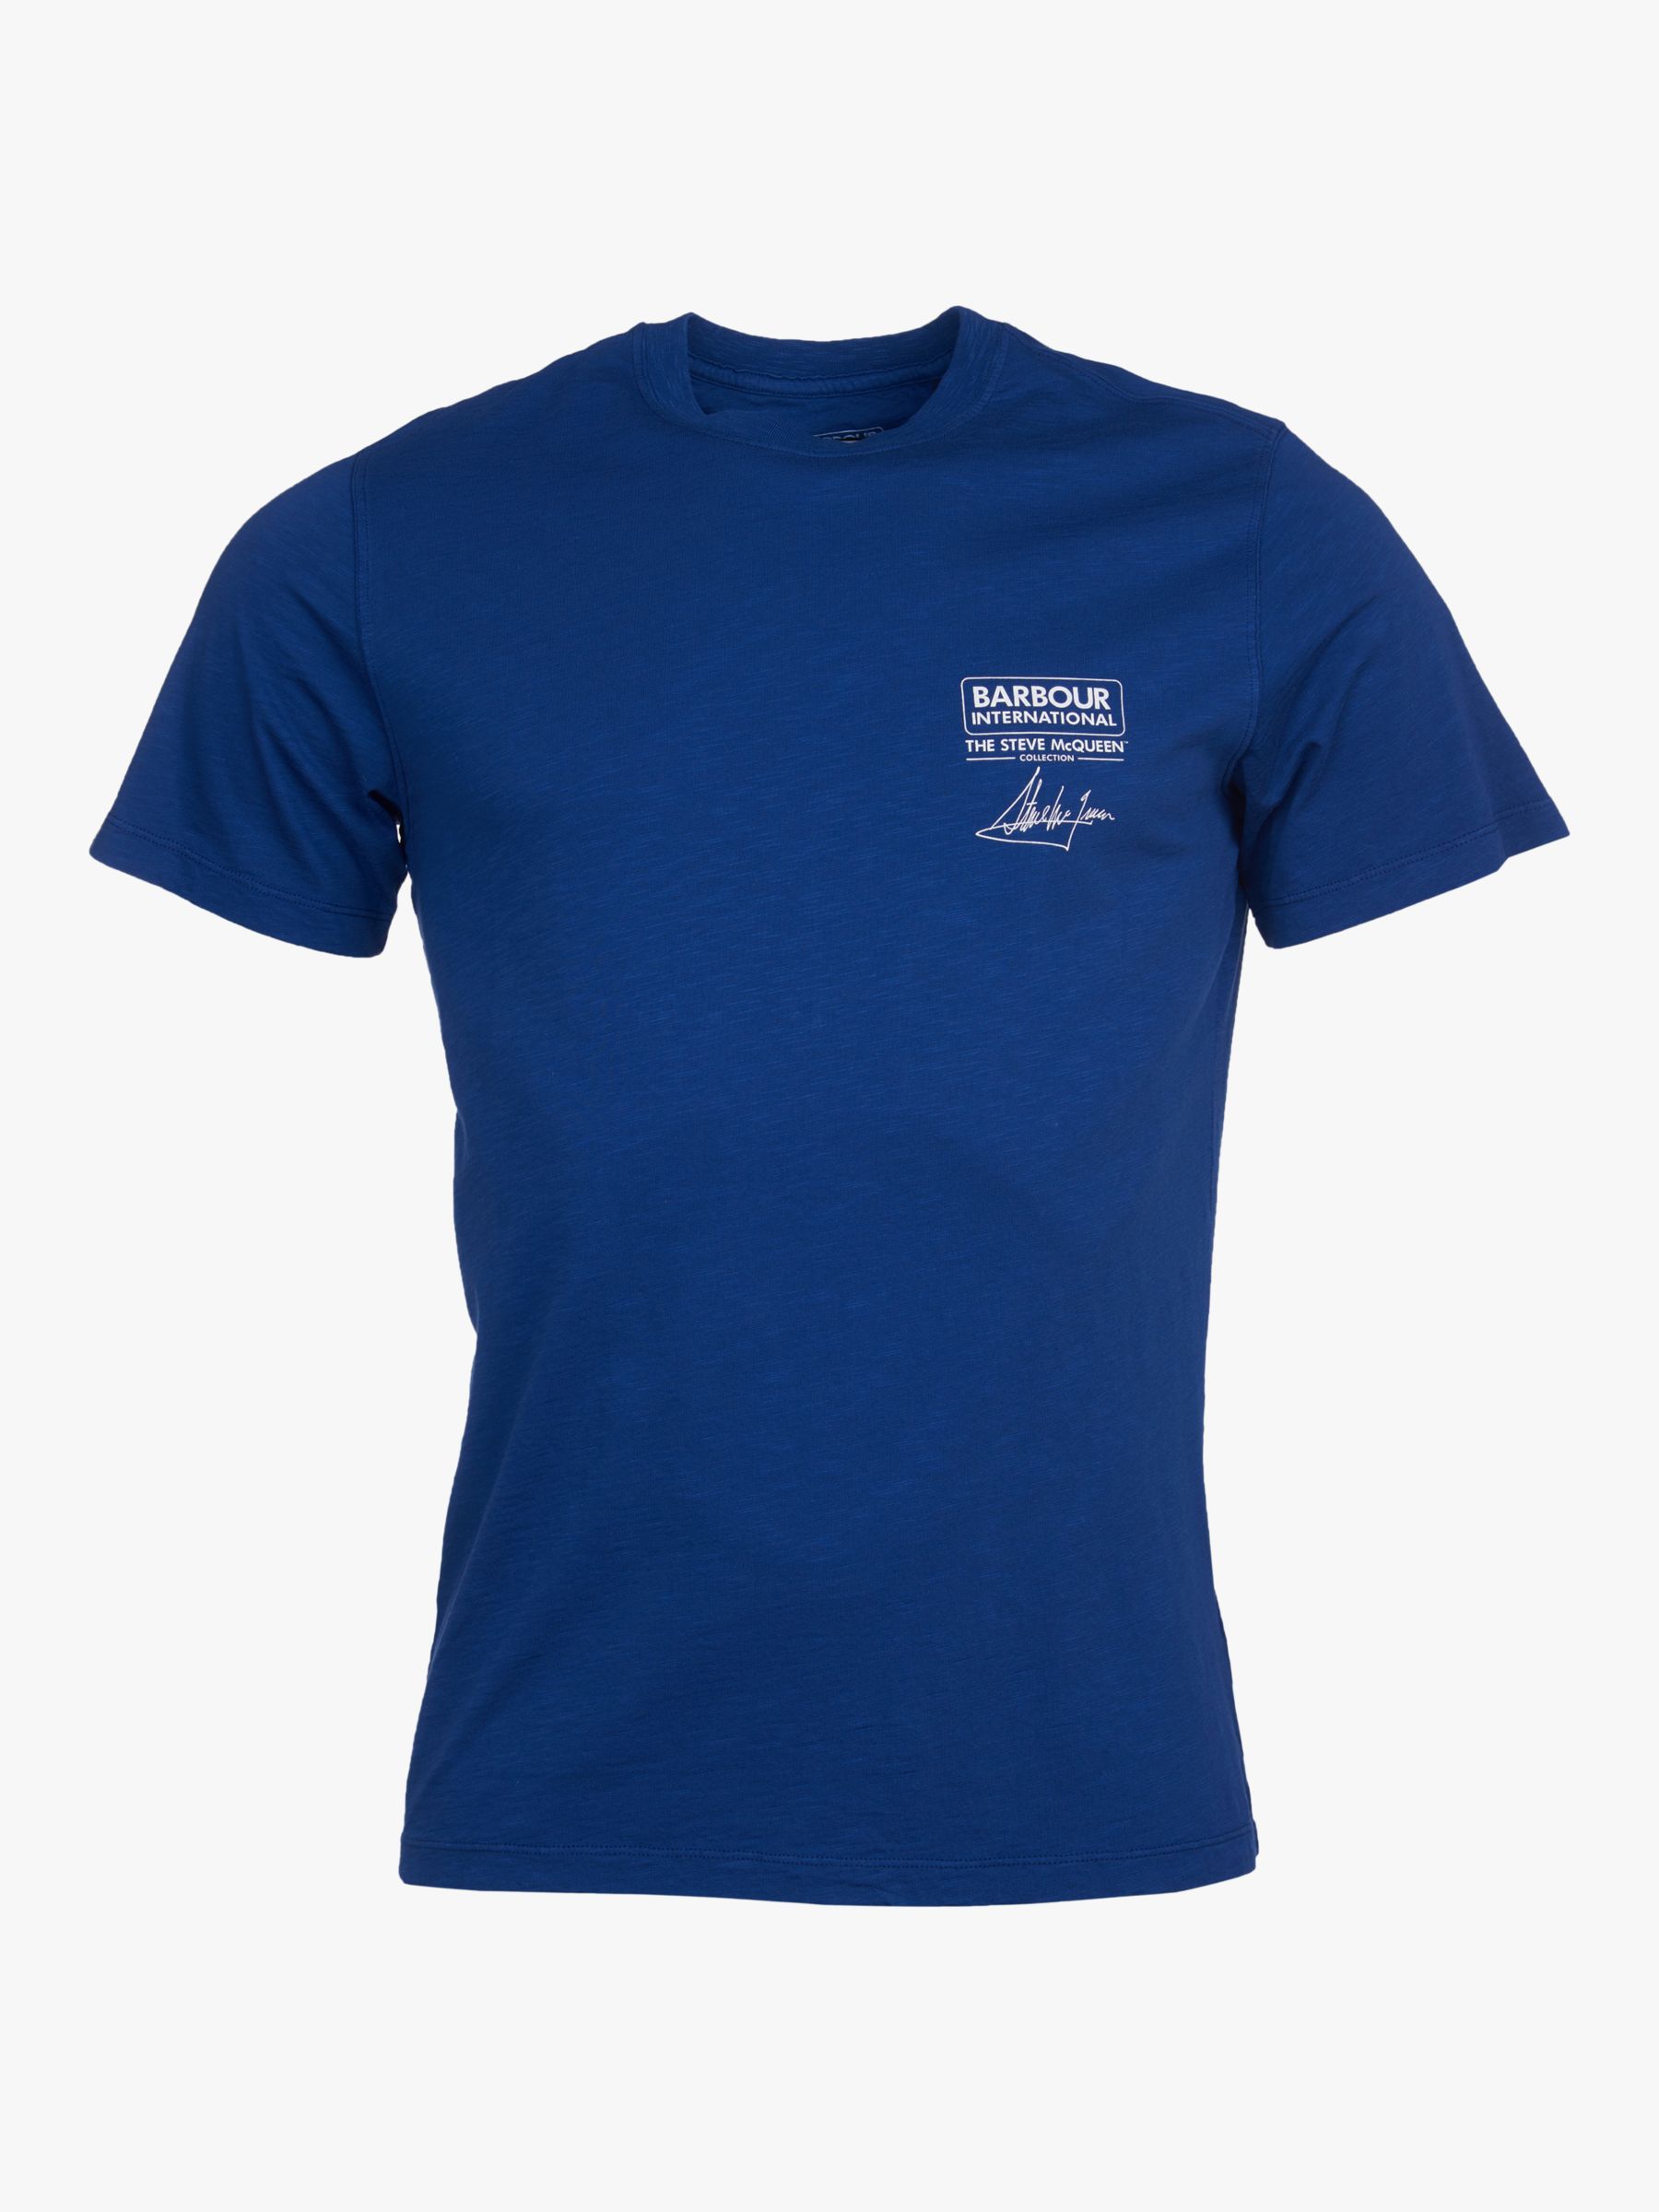 Barbour International Steve McQueen Signature T-Shirt, Inky Blue